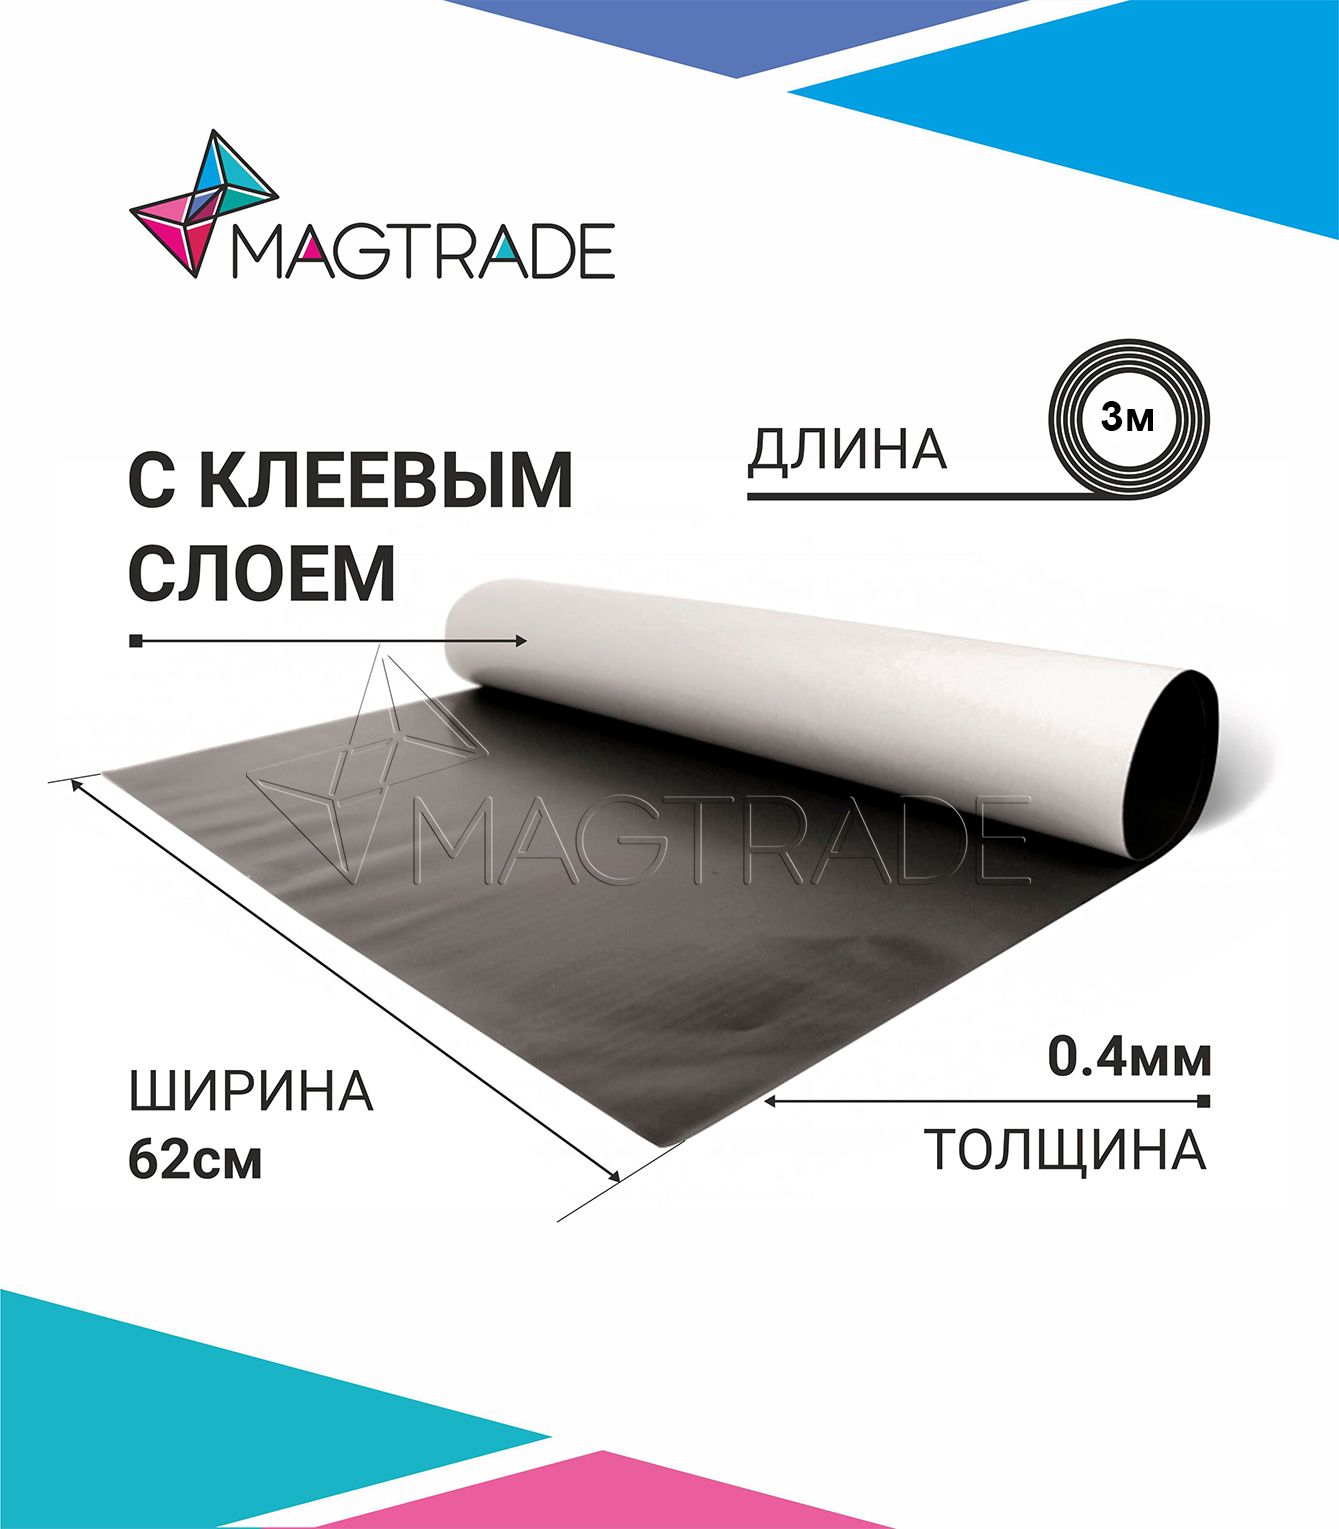 Магнитный винил MAGTRADE с клеевым слоем 0,62 х 3 м, толщина 0,4 мм, лист 3 метра магнитный винил magtrade с клеем толщина 0 9 мм лист 3м